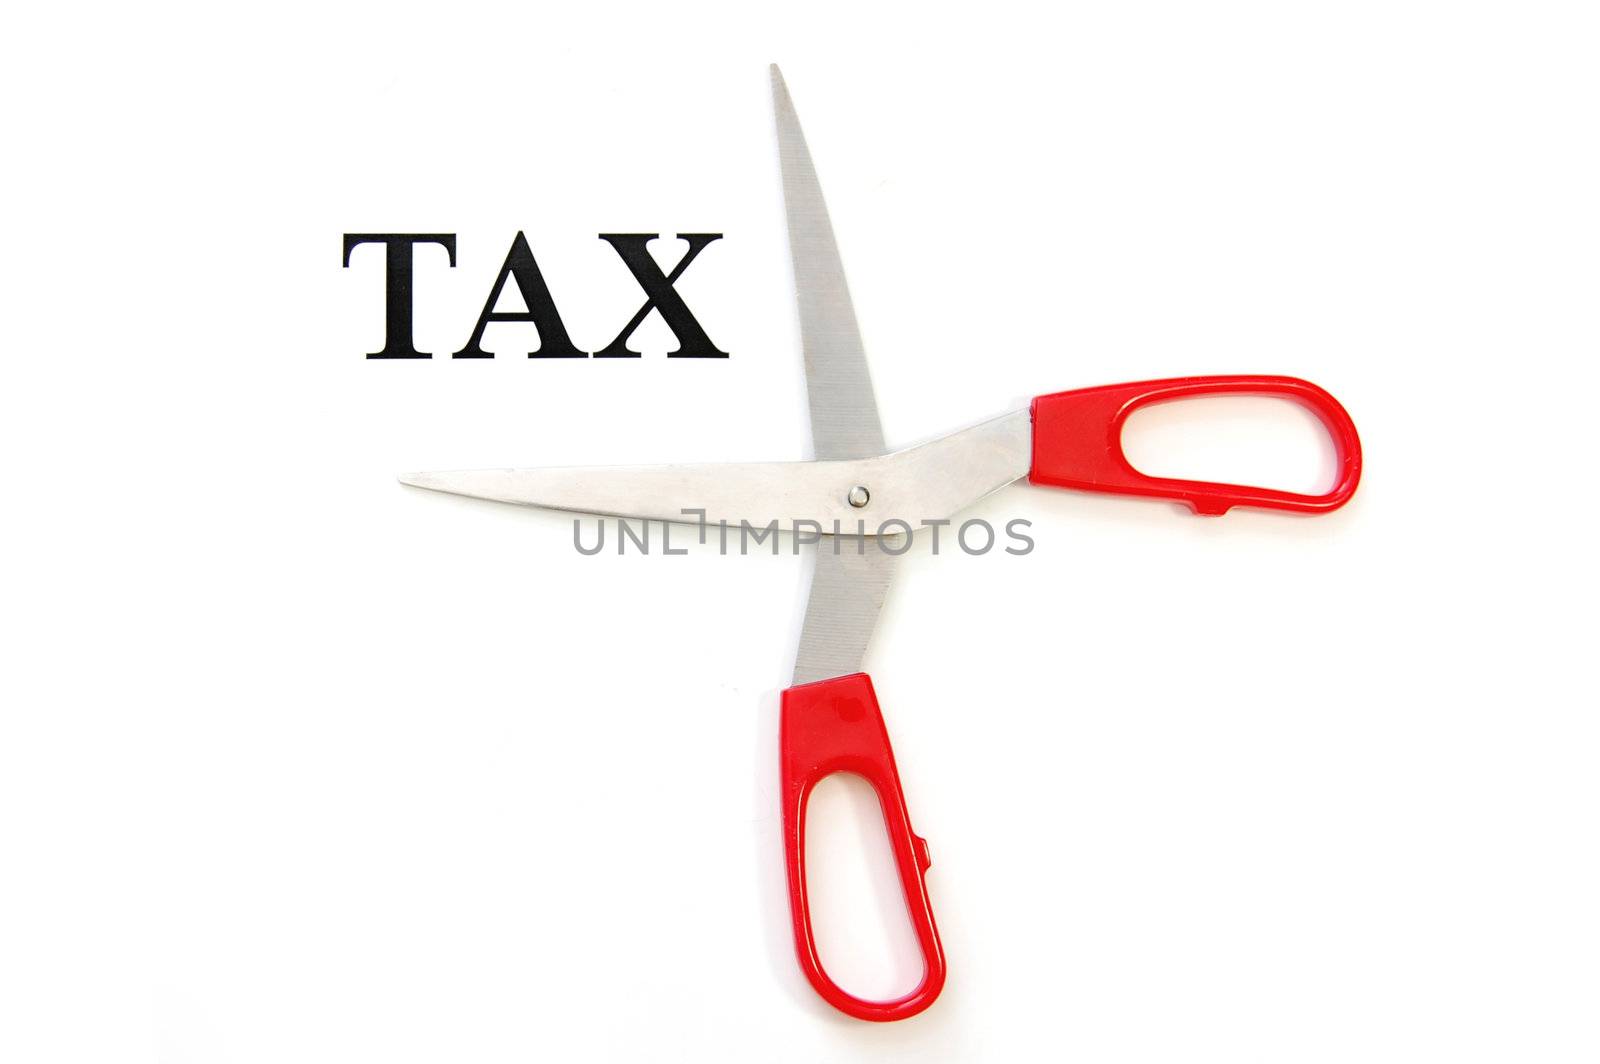 Tax cut by unikpix